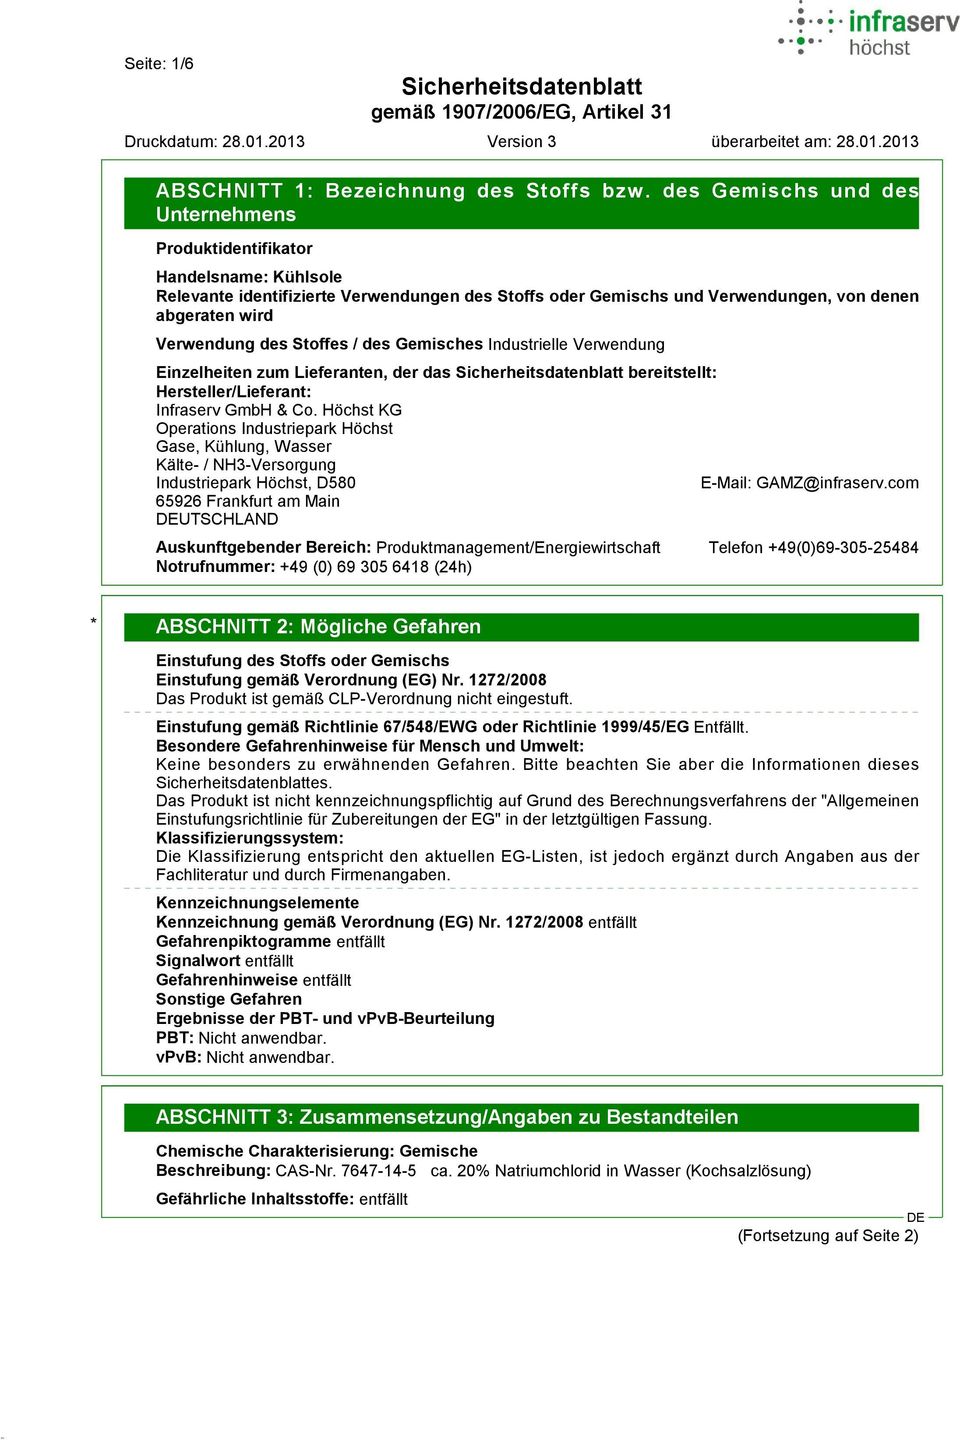 Industrielle Verwendung Einzelheiten zum Lieferanten, der das bereitstellt: Hersteller/Lieferant: Infraserv GmbH & Co.